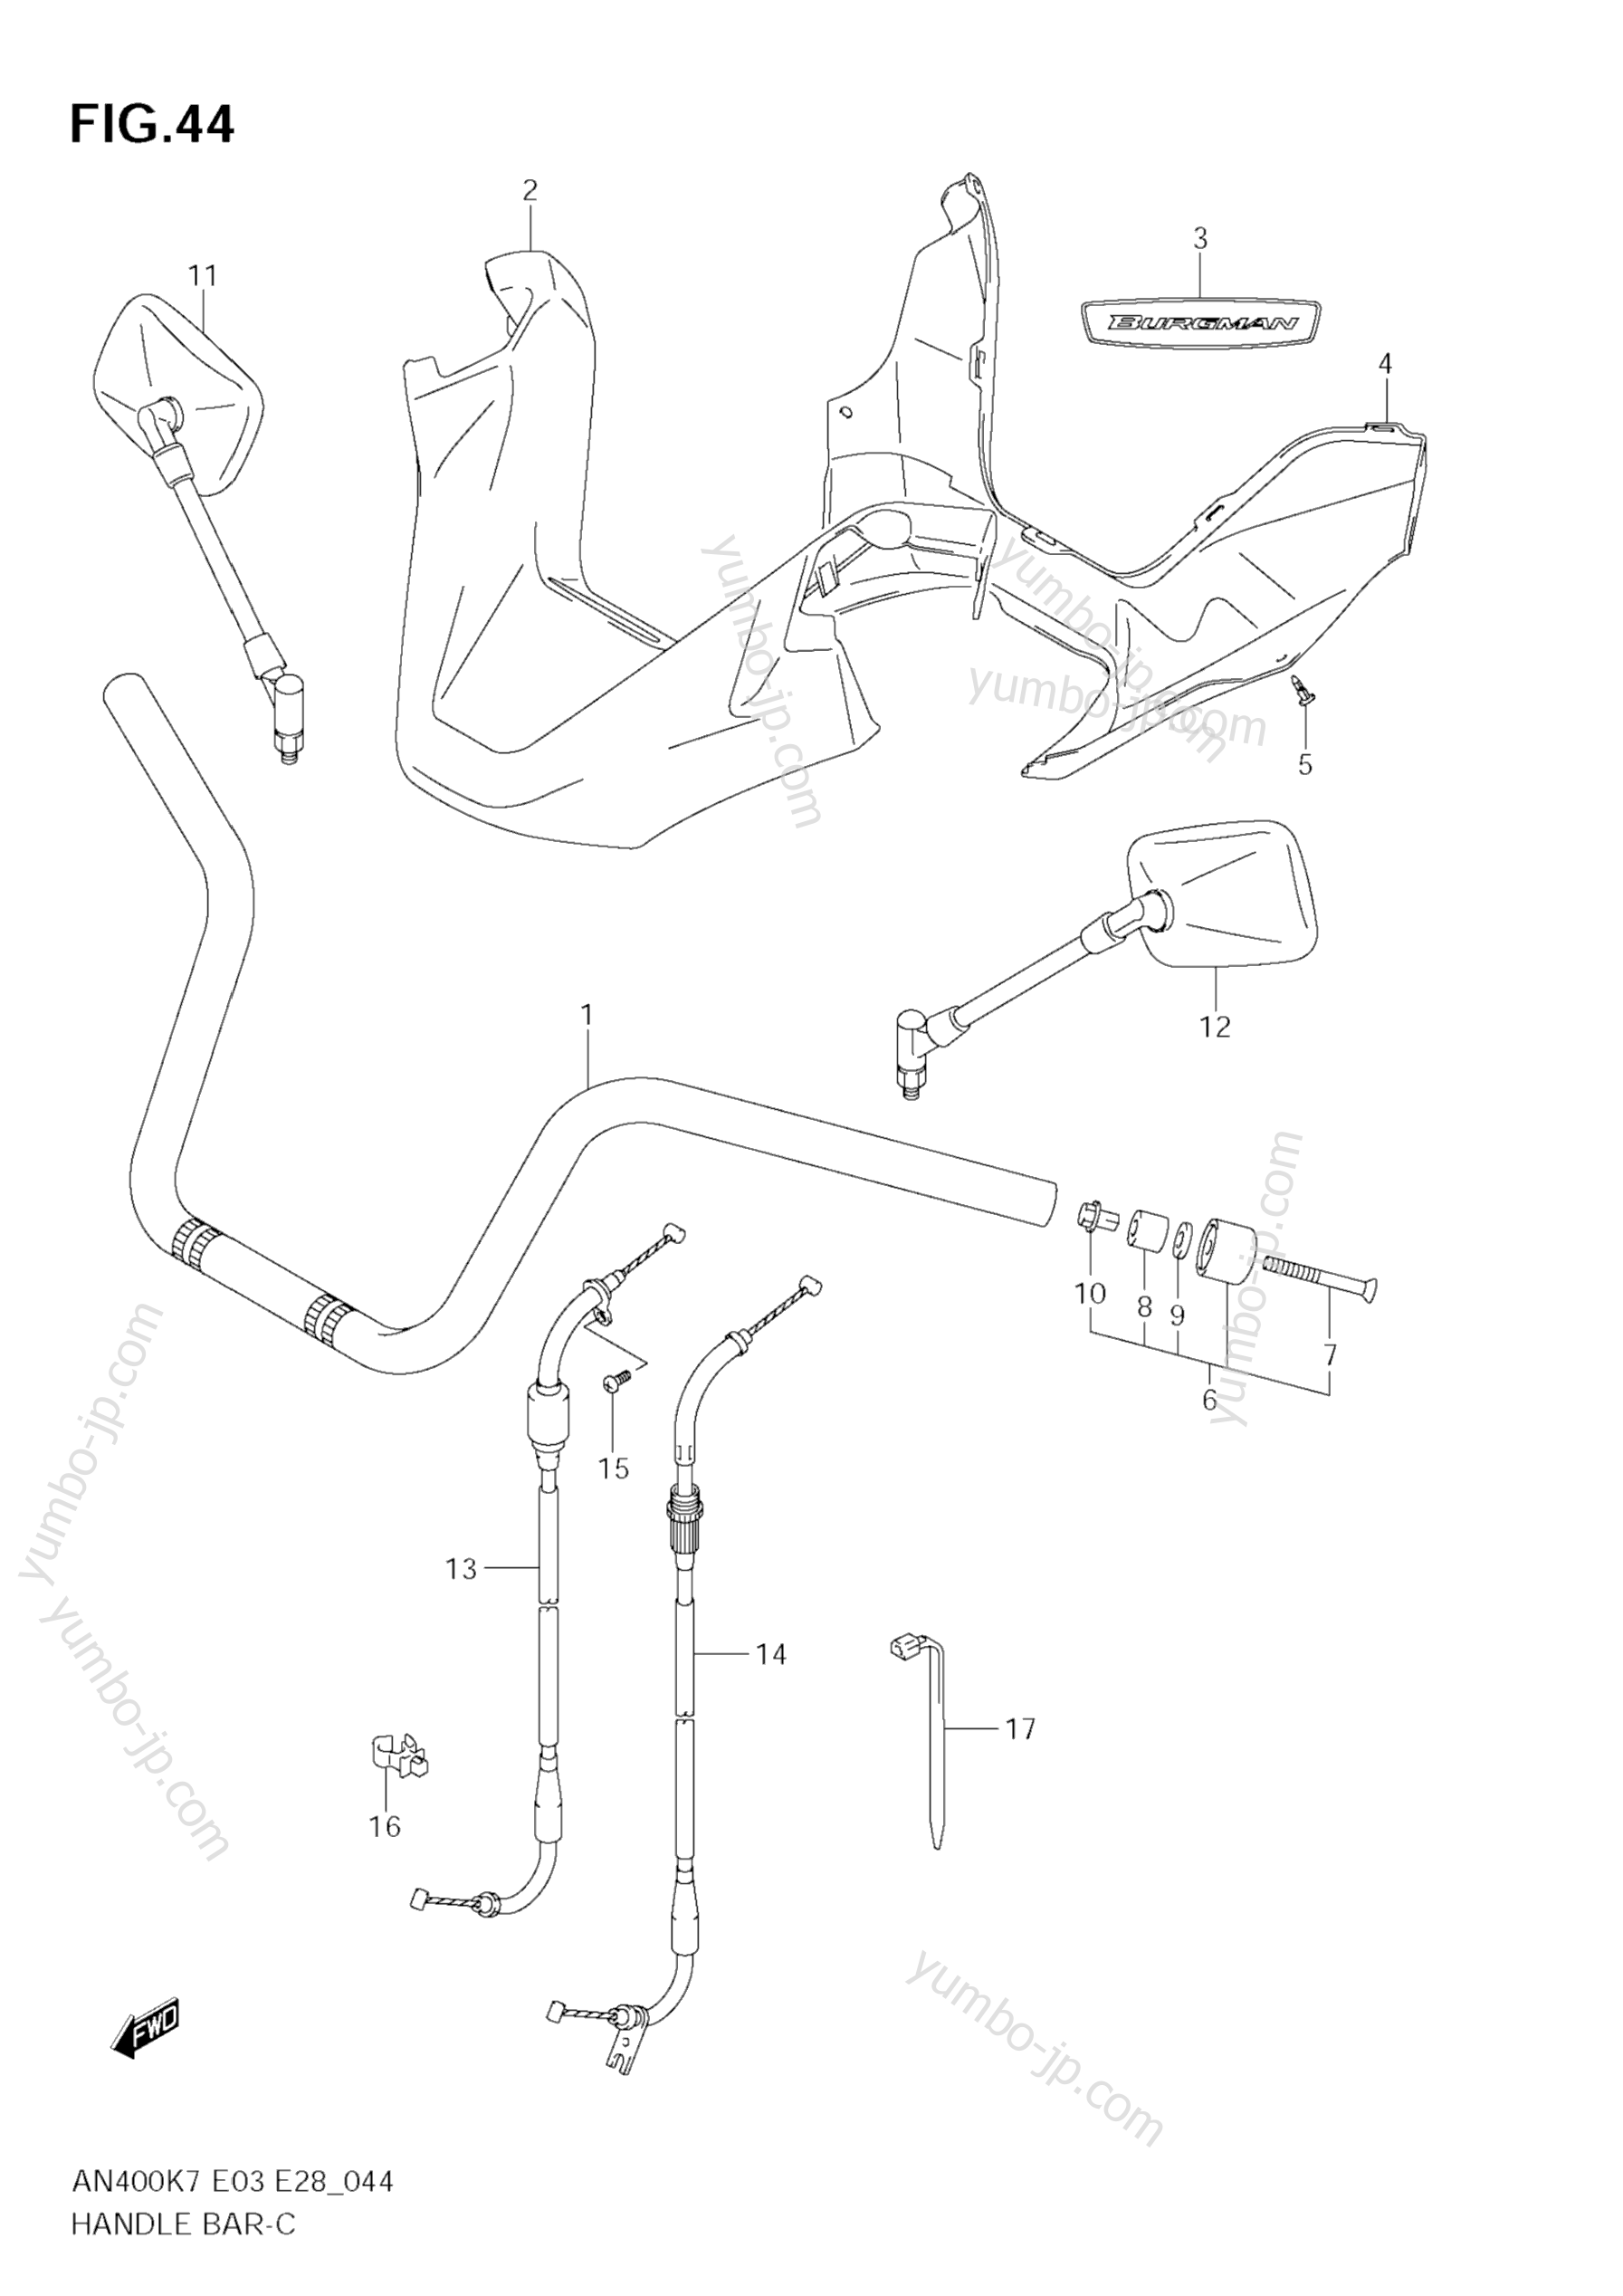 Румпель (рукоятка управления) для скутеров SUZUKI Burgman (AN400A) 2008 г.